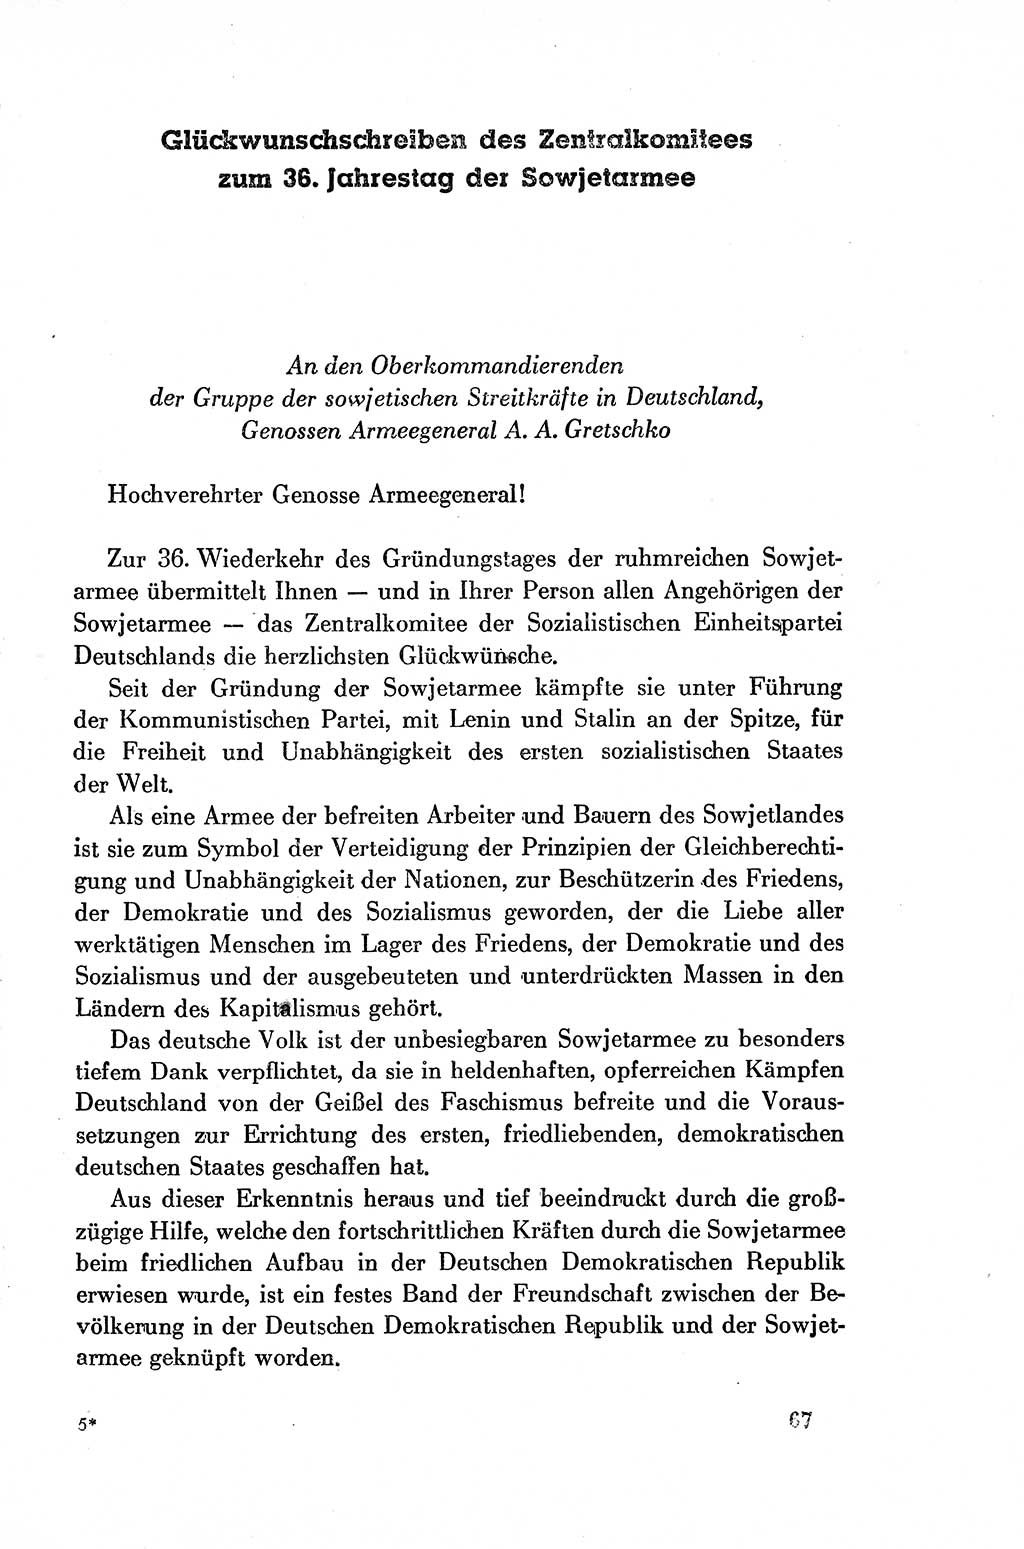 Dokumente der Sozialistischen Einheitspartei Deutschlands (SED) [Deutsche Demokratische Republik (DDR)] 1954-1955, Seite 67 (Dok. SED DDR 1954-1955, S. 67)